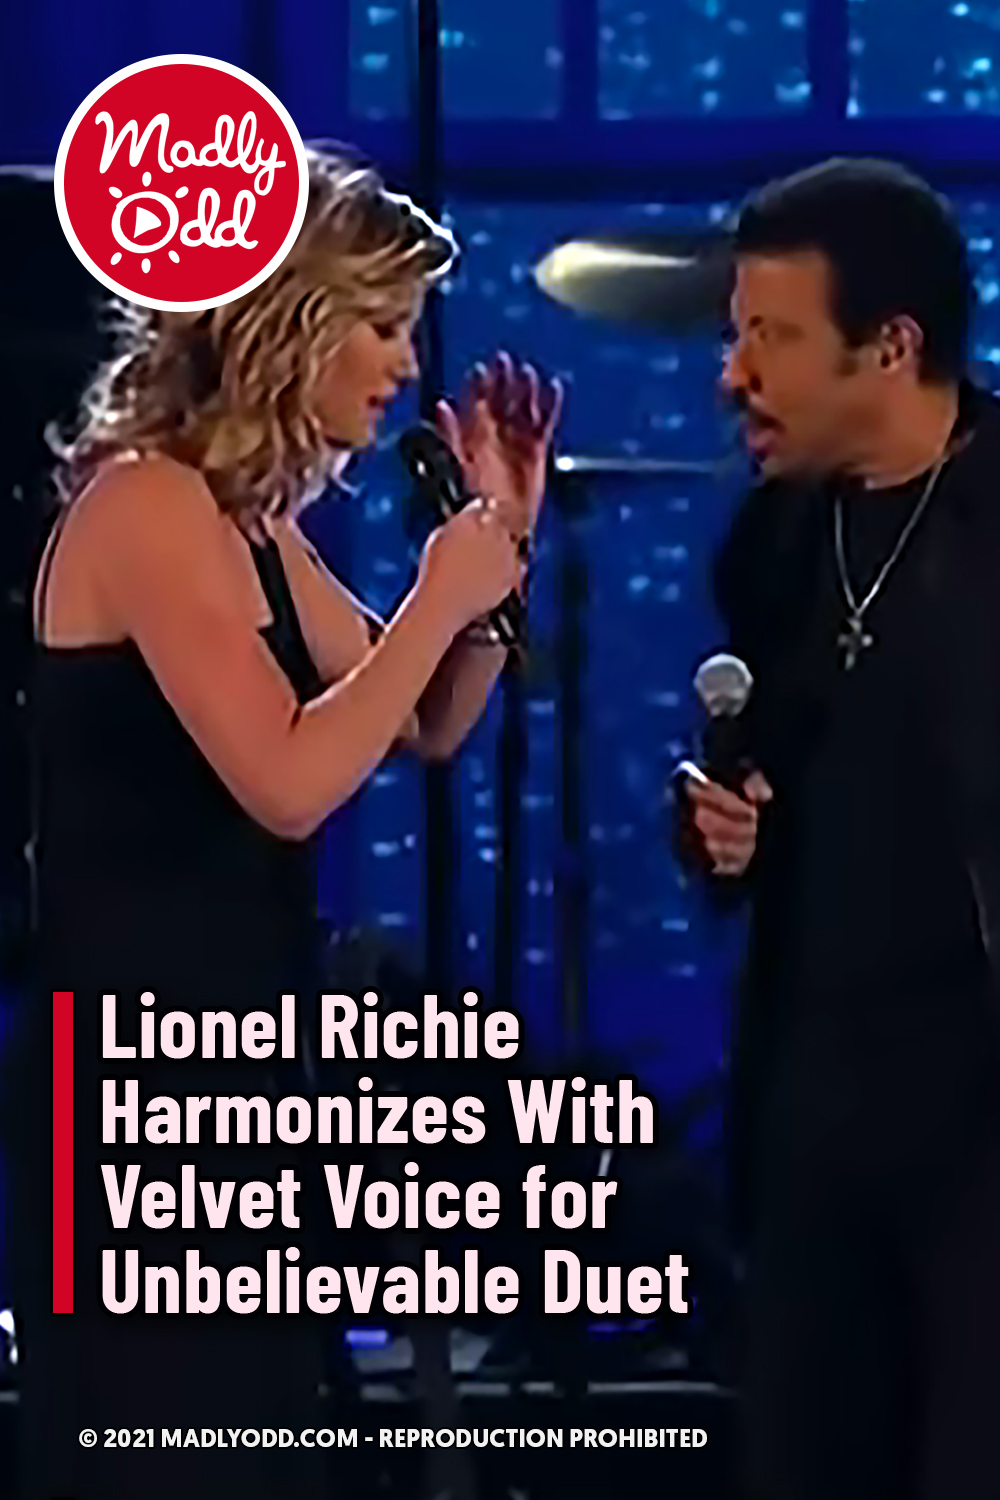 Lionel Richie Harmonizes With Velvet Voice for Unbelievable Duet